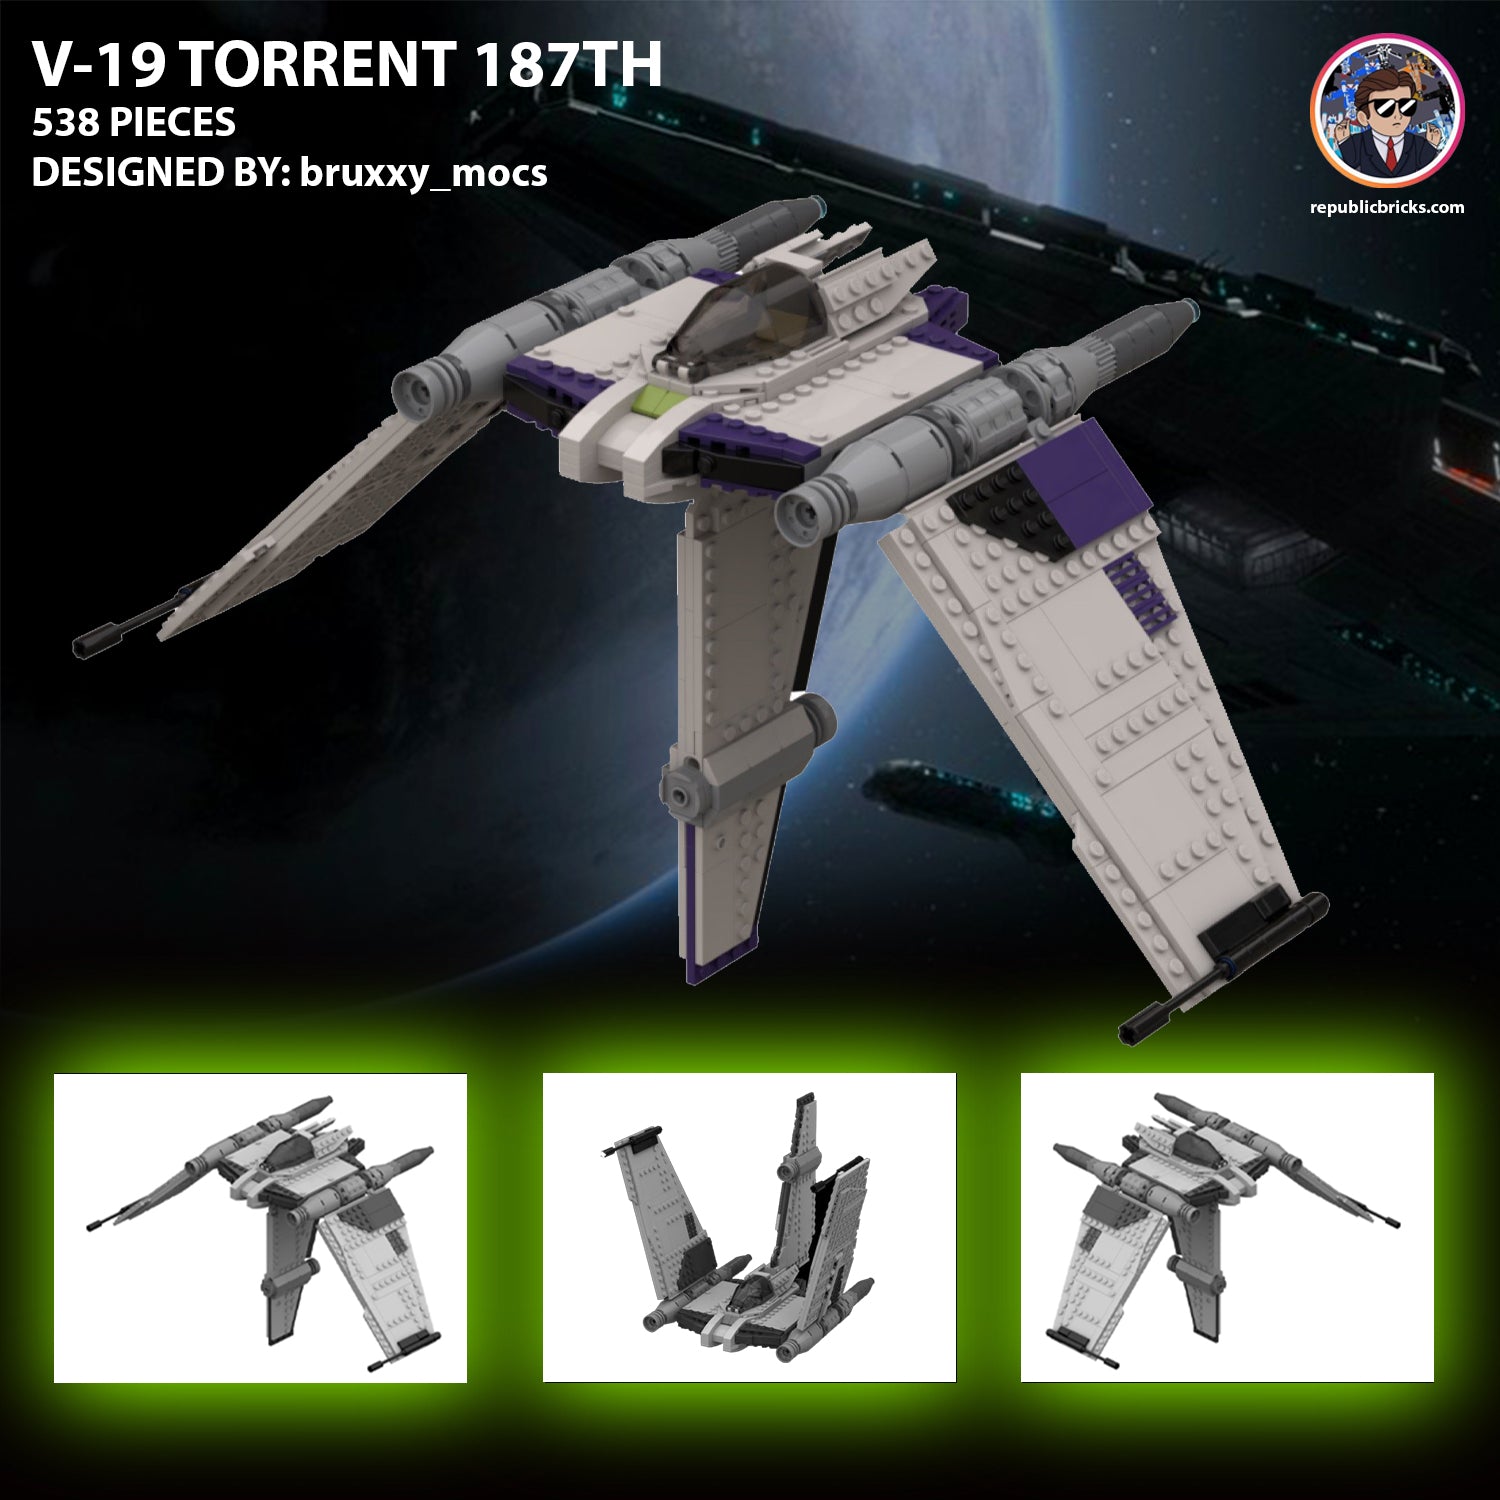 15602: V-19 TORRENT V3 (187TH)